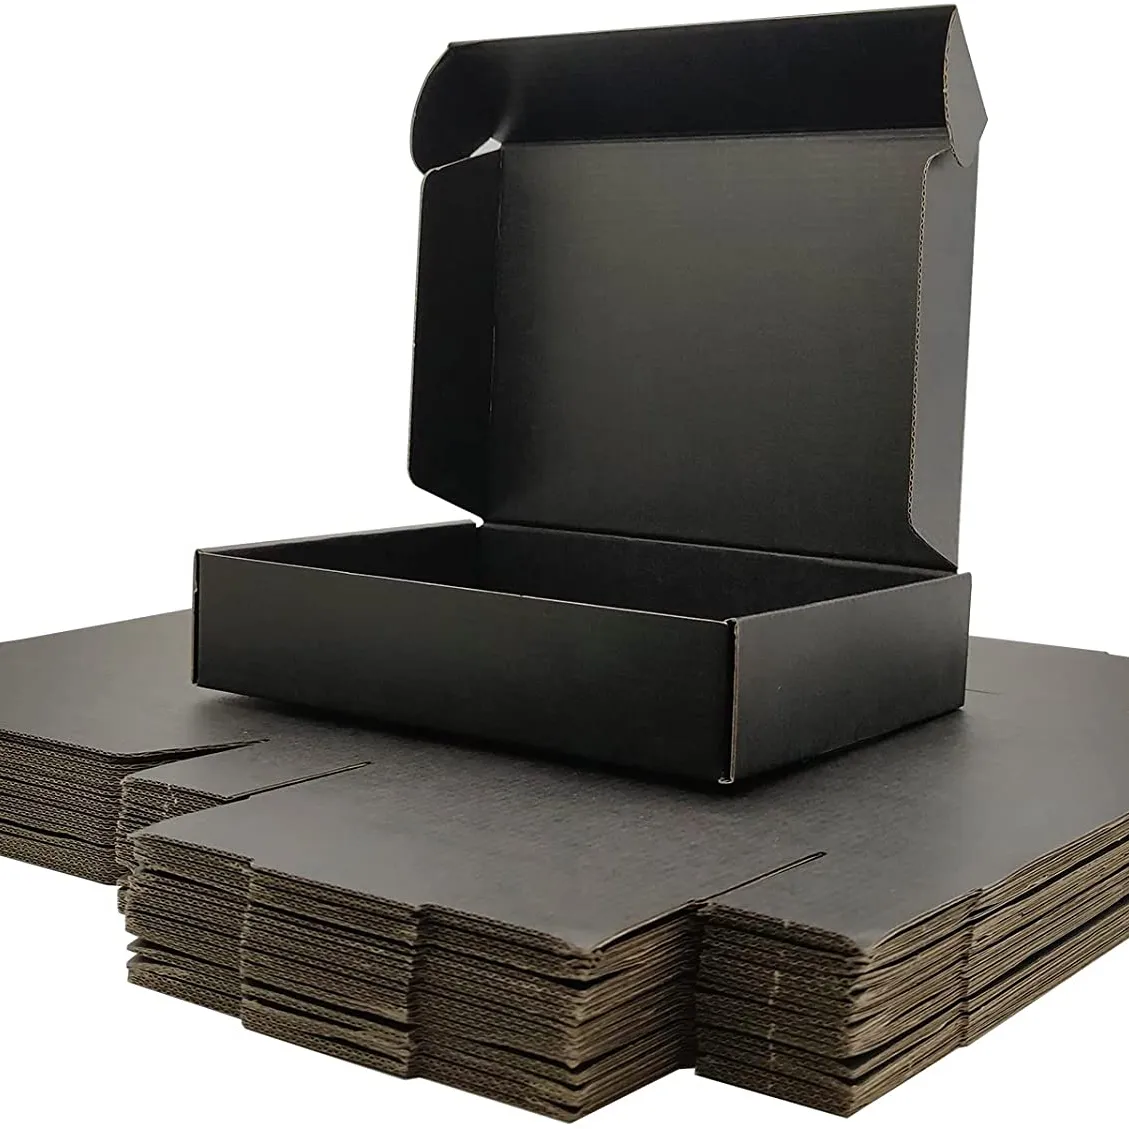 OEM ODM пользовательские печатные тканевые туфли упаковка доставка картонная коробка высокое качество роскошная гофрированная бумага черная Доставка почтовых ящиков